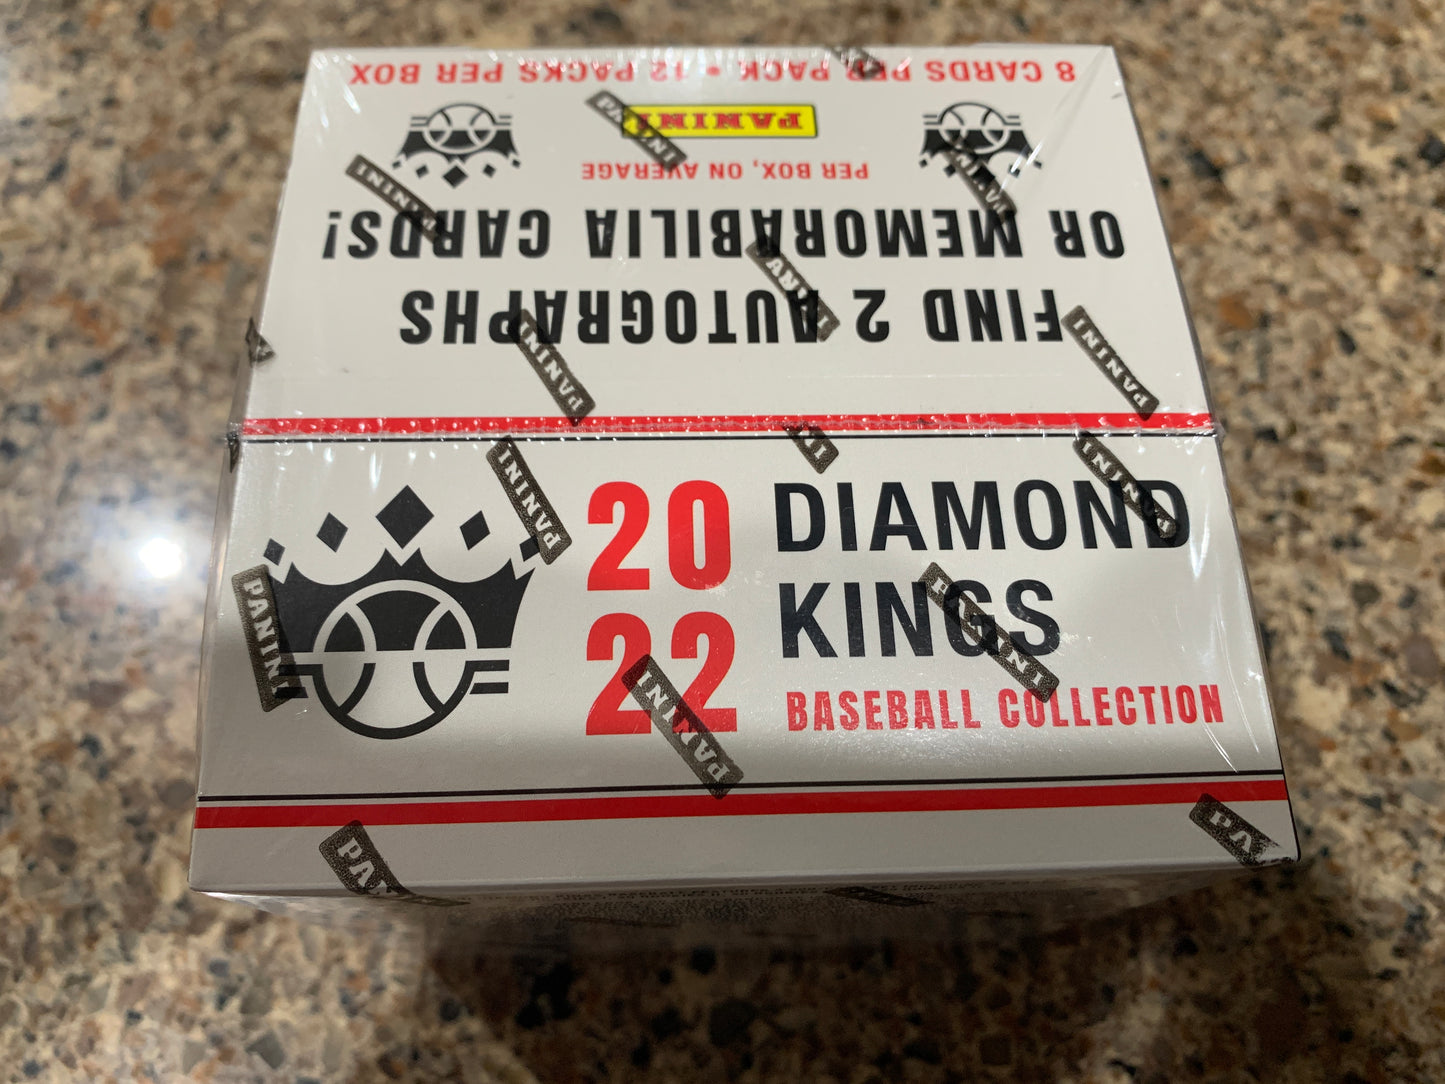 2022 Panini Diamond Kings Baseball Hobby Box